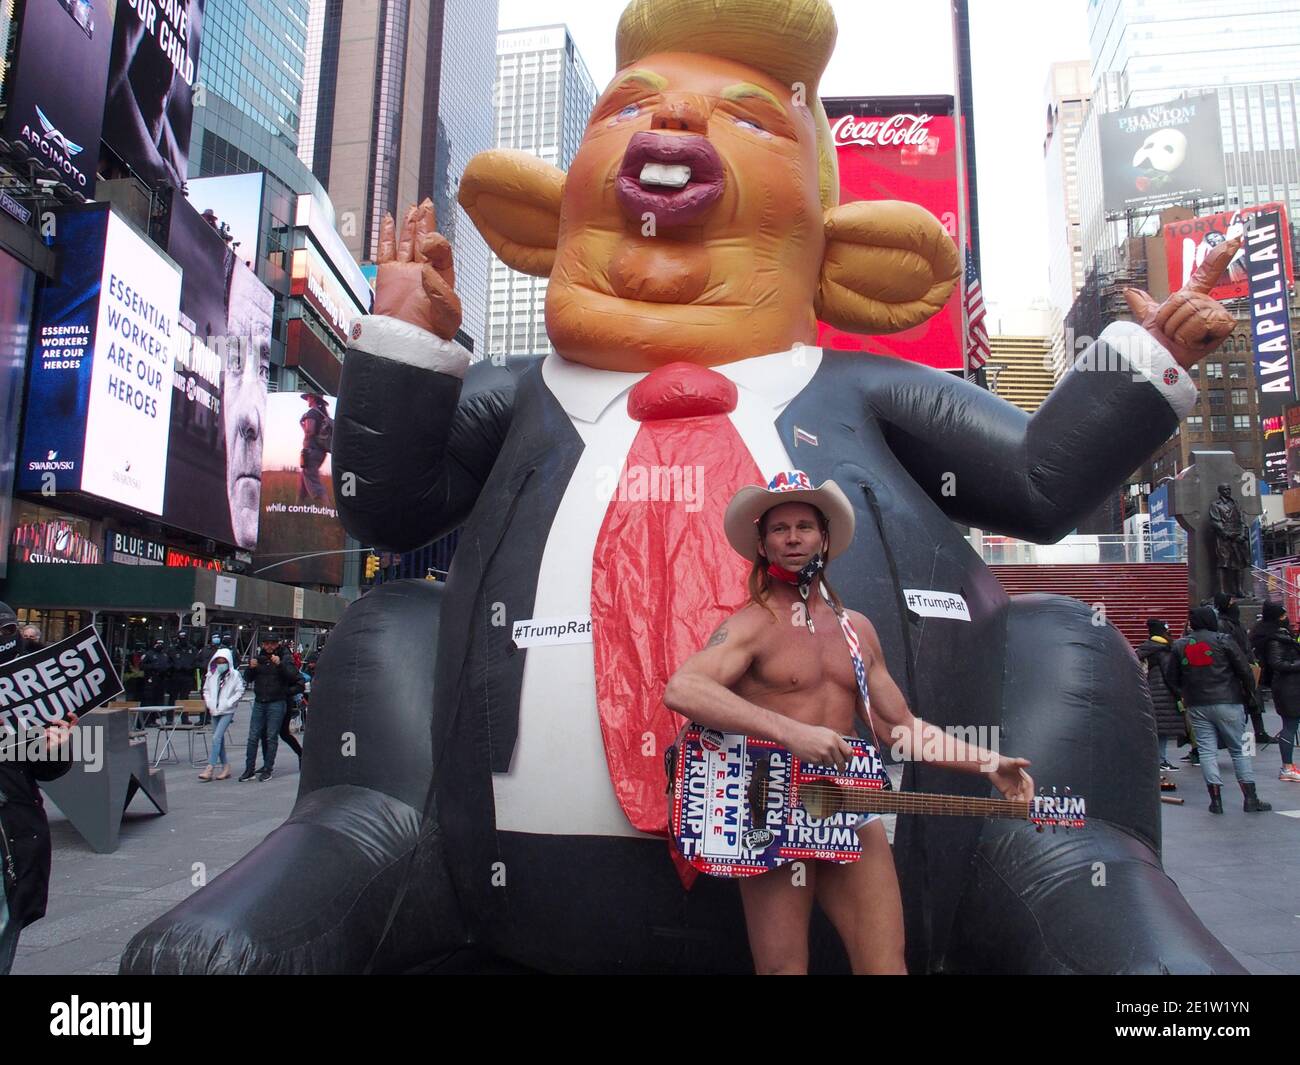 9 gennaio 2021, New York, New York, Stati Uniti: New York City, Trump Pence uscire ora Rally tenuto a Times Square. (Immagine di credito: © Bruce Cotler/ZUMA Wire) Foto Stock